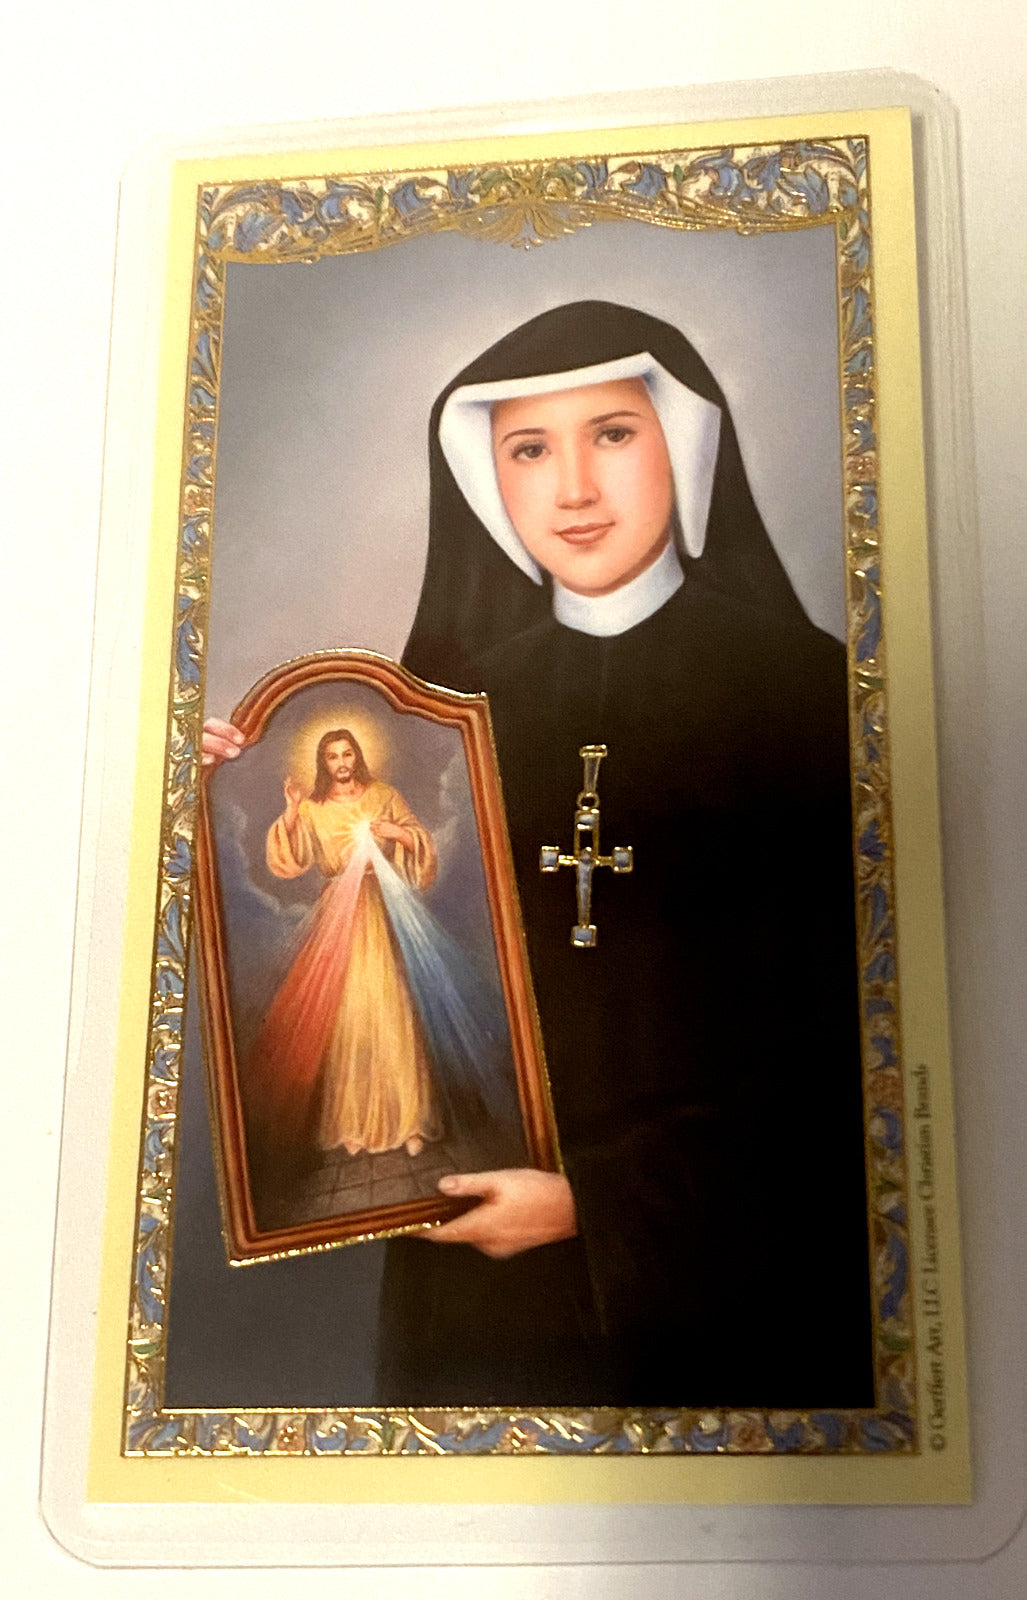 Saint Sister Faustina Laminated Prayer Card, New - Bob and Penny Lord